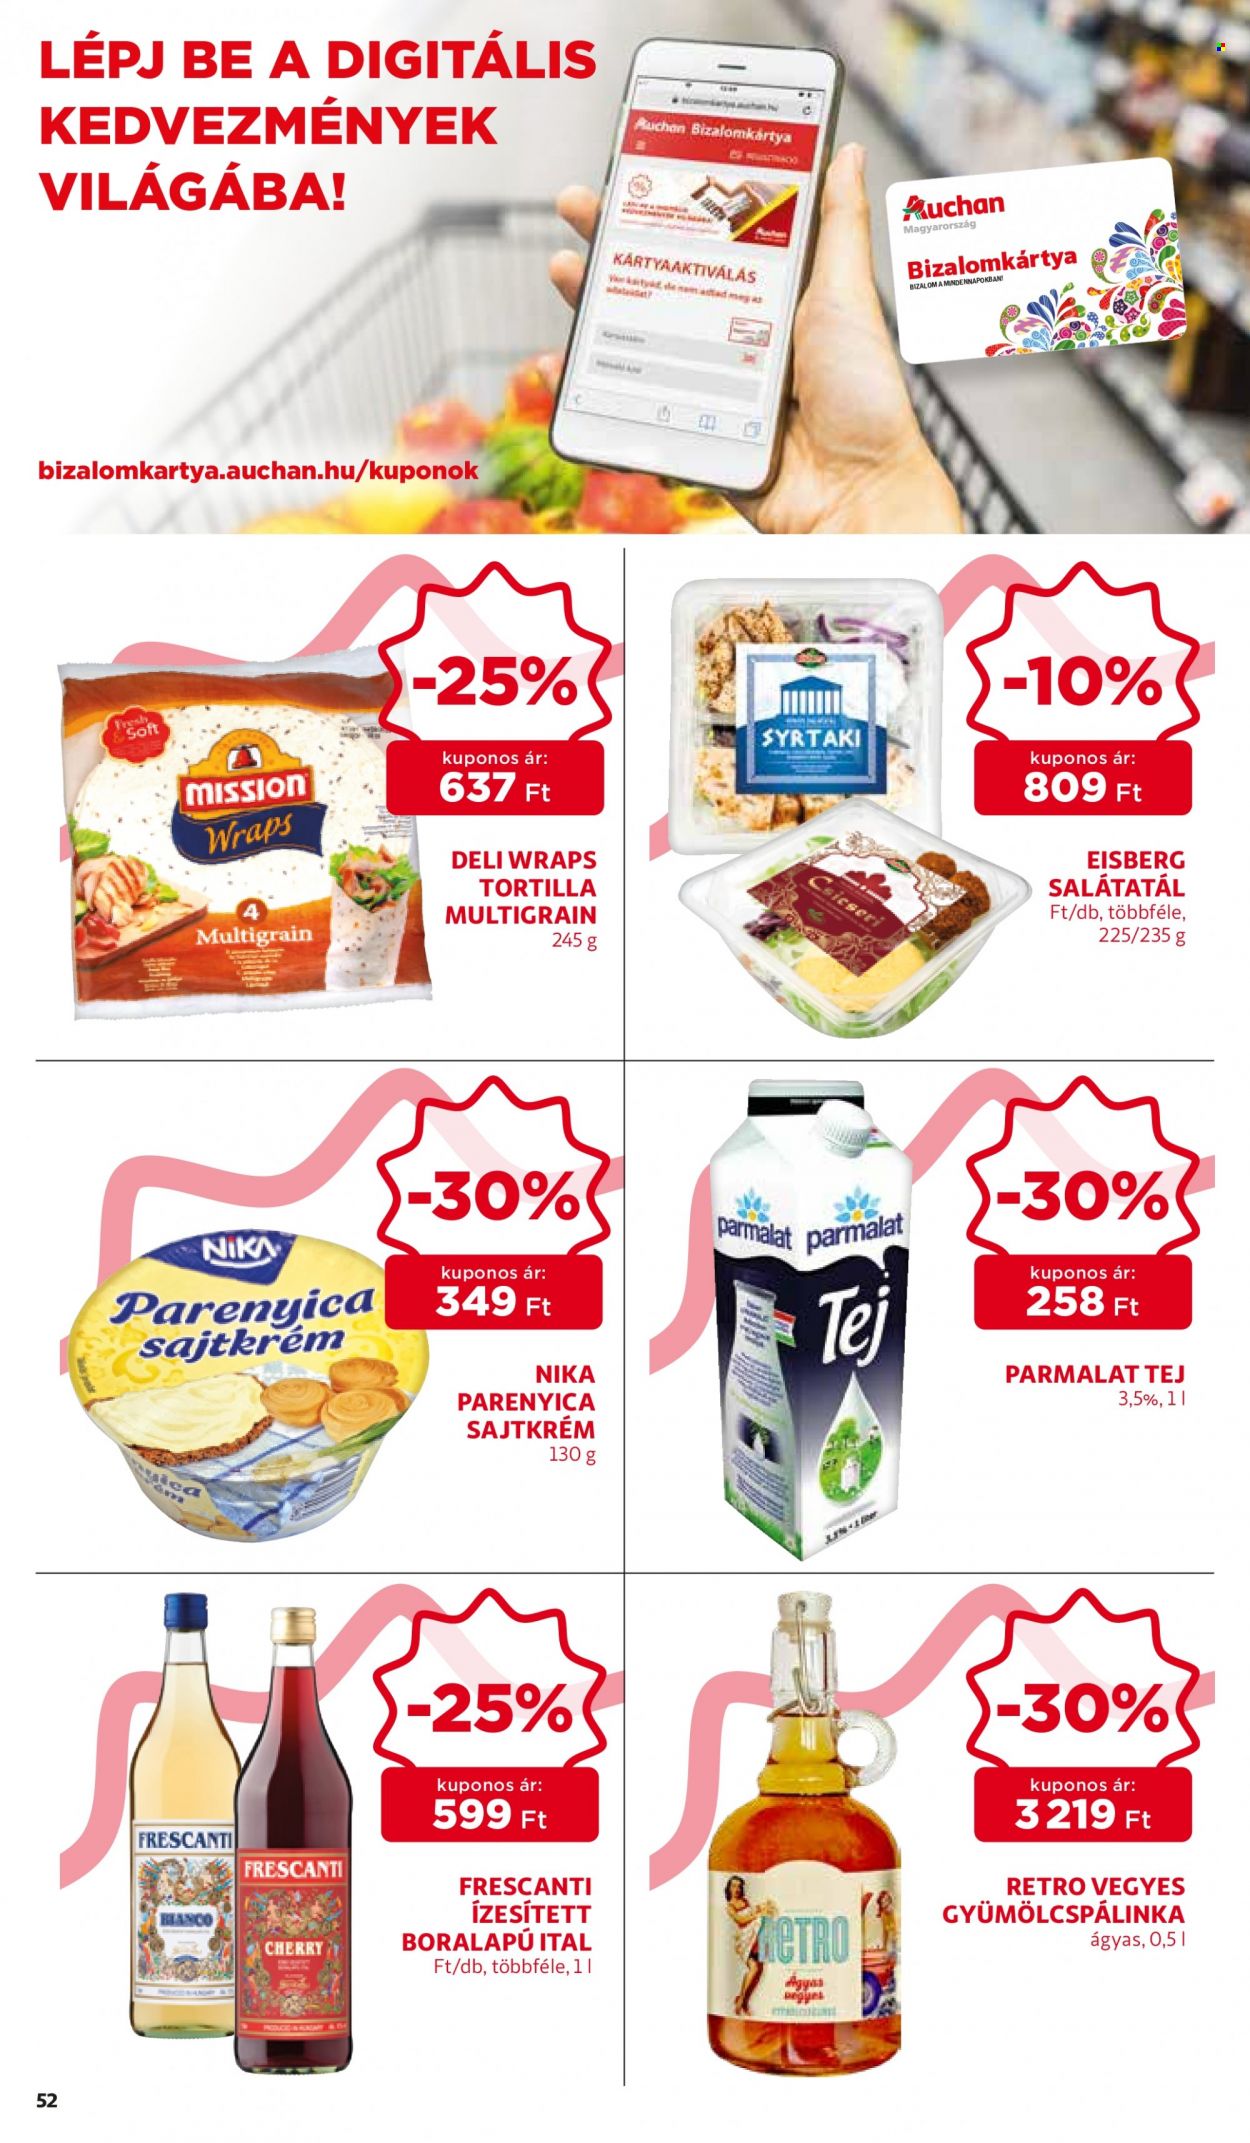 thumbnail - Auchan akciós újsága  - 2021.10.14 - 2021.10.20 - Akciós termékek - tortilla, krémsajt, parenyica sajt, Parmalat, tej.  52. Oldal